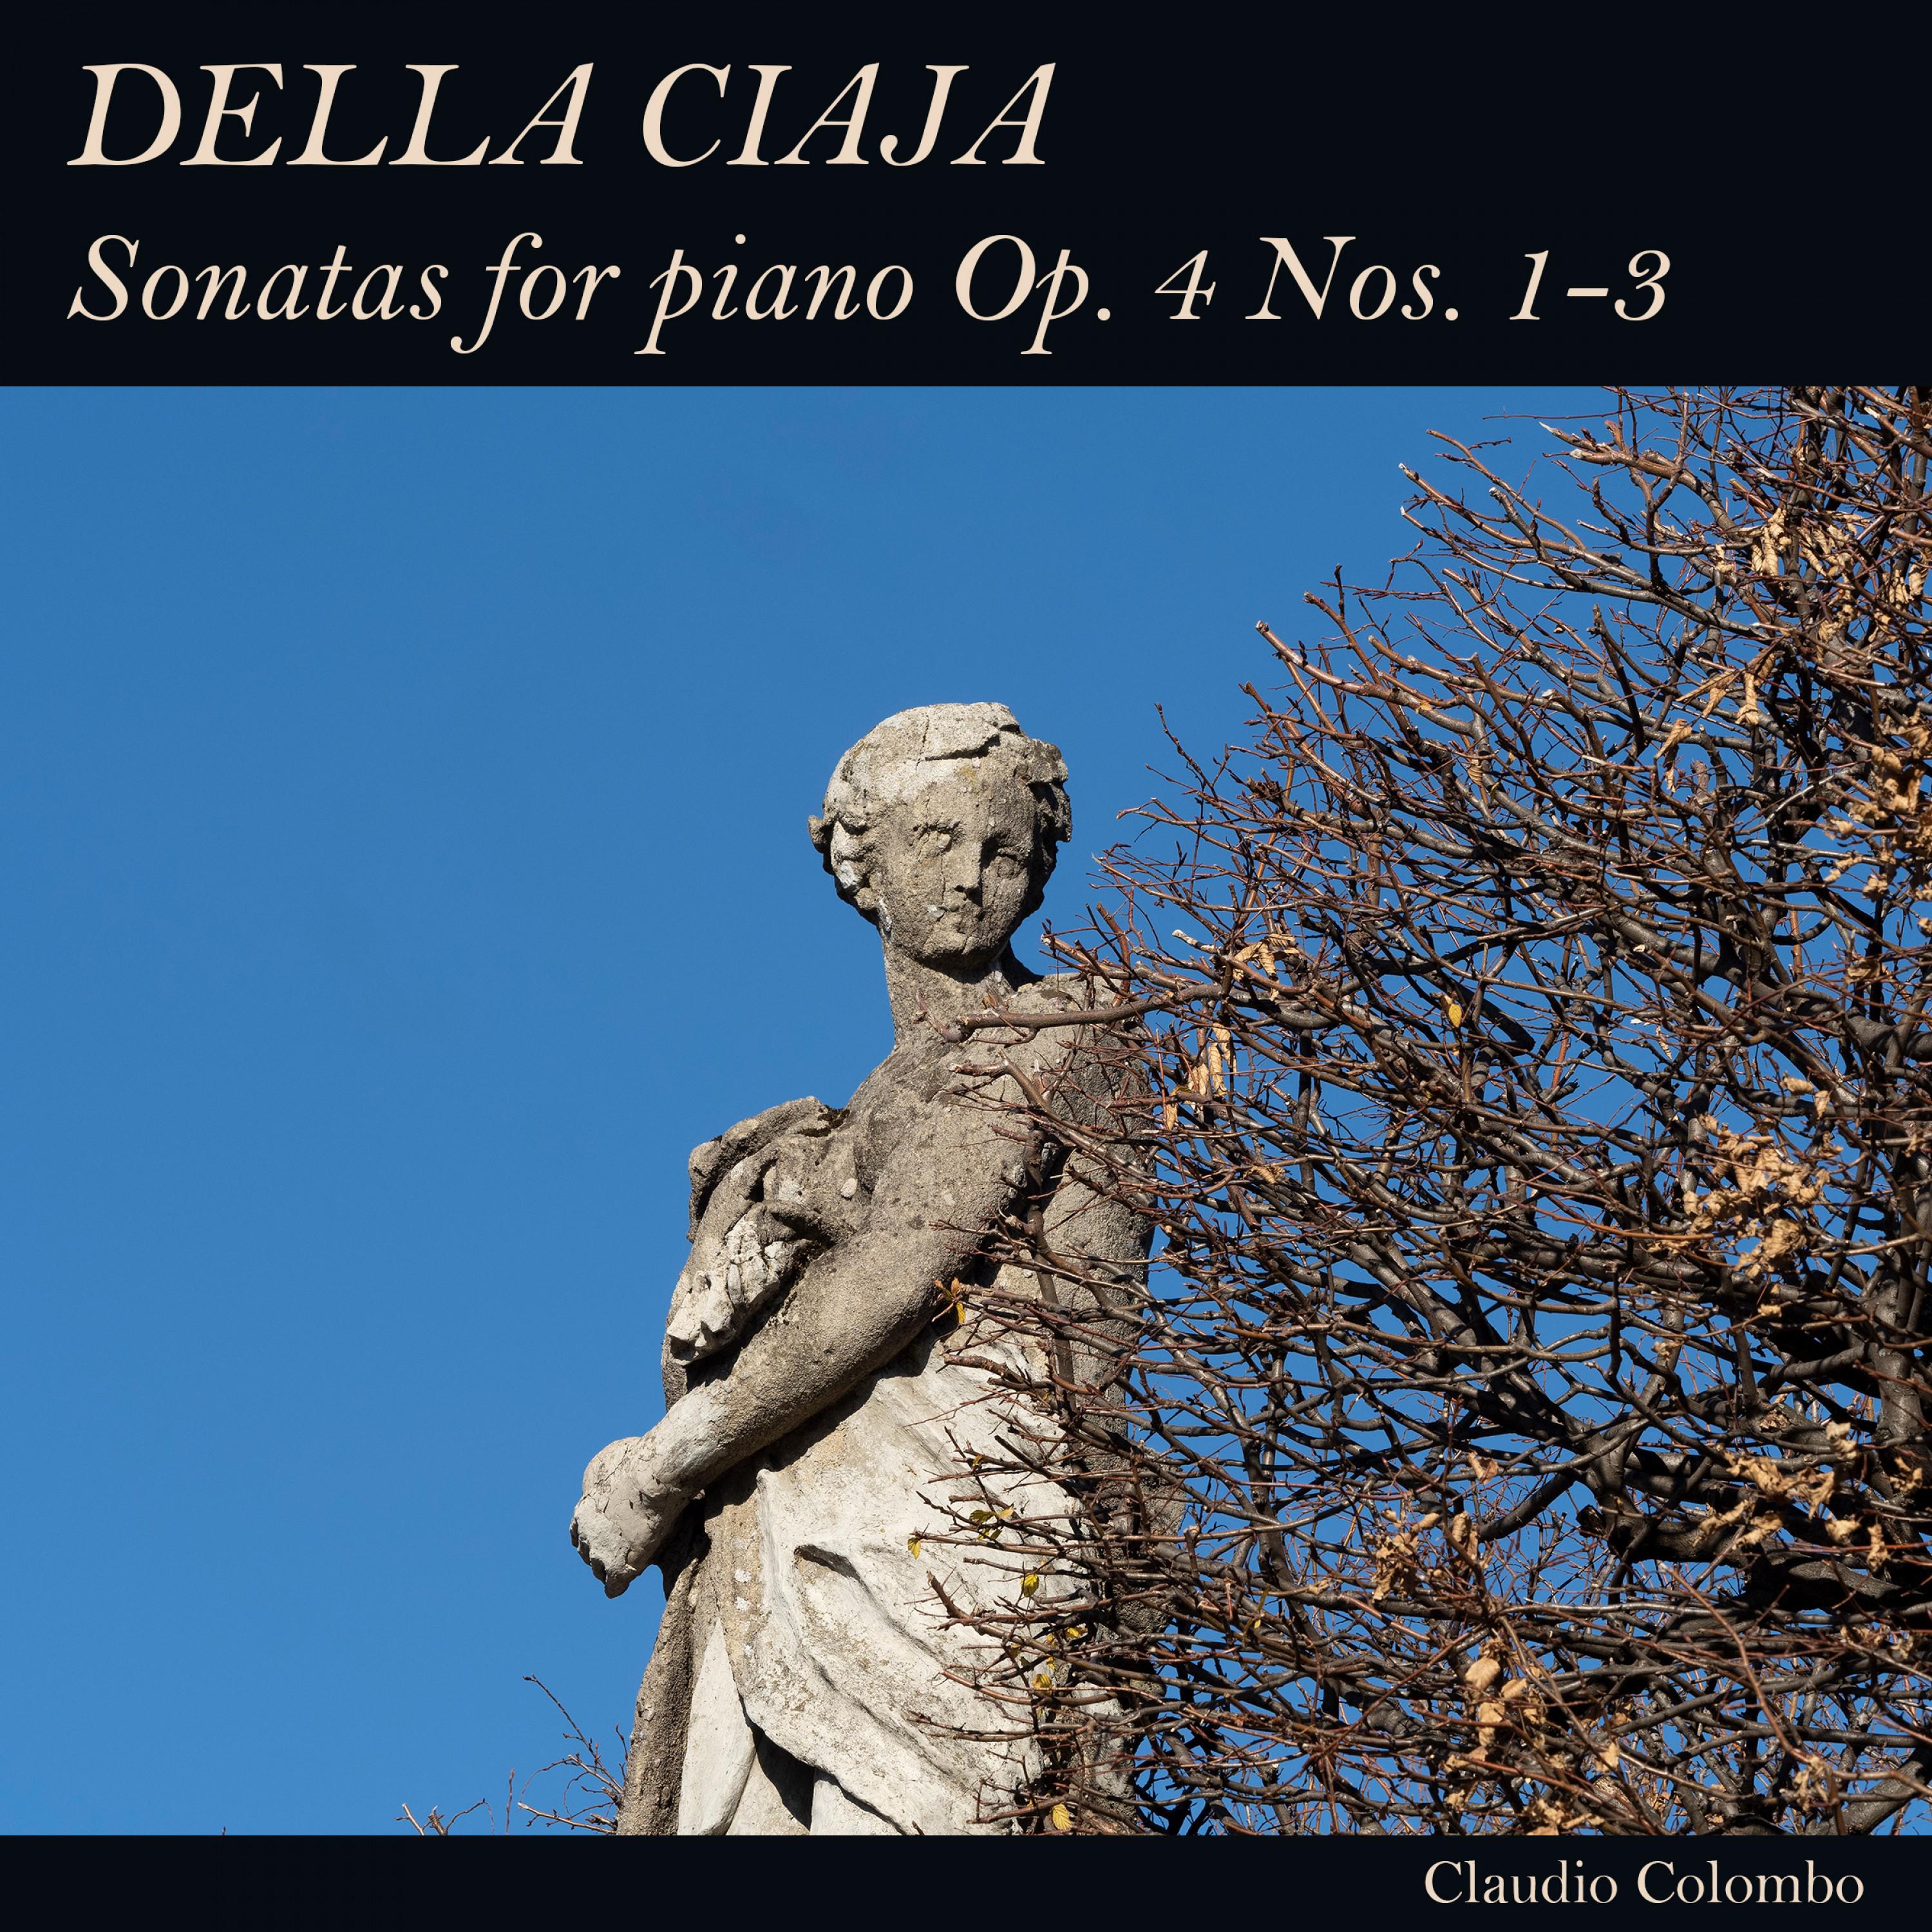 Sonata in G Minor, Op. 4 No. 3: I. Toccata